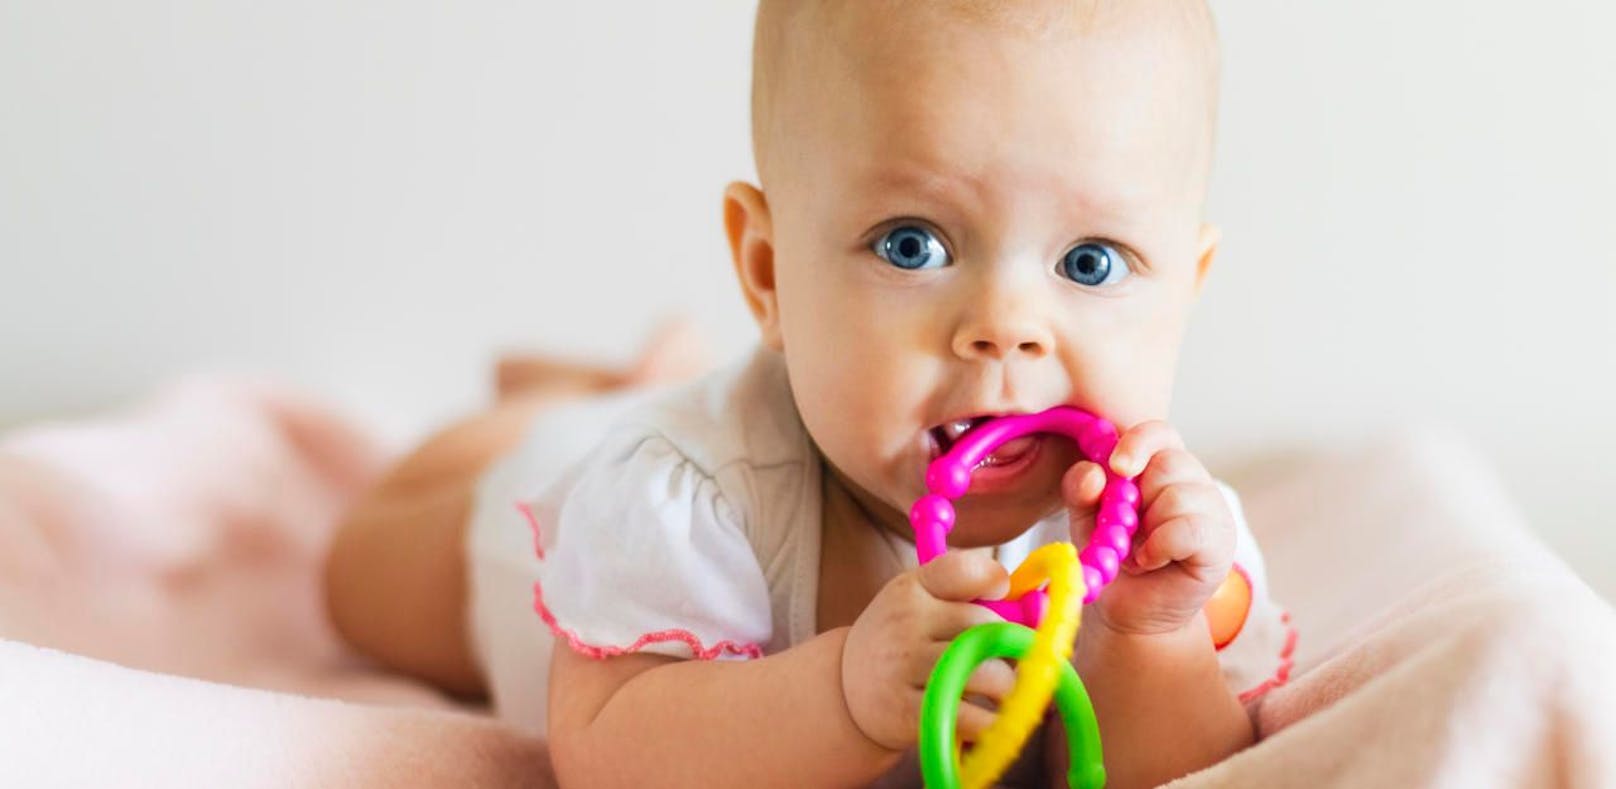 manche Produkte für Babys sind giftig.